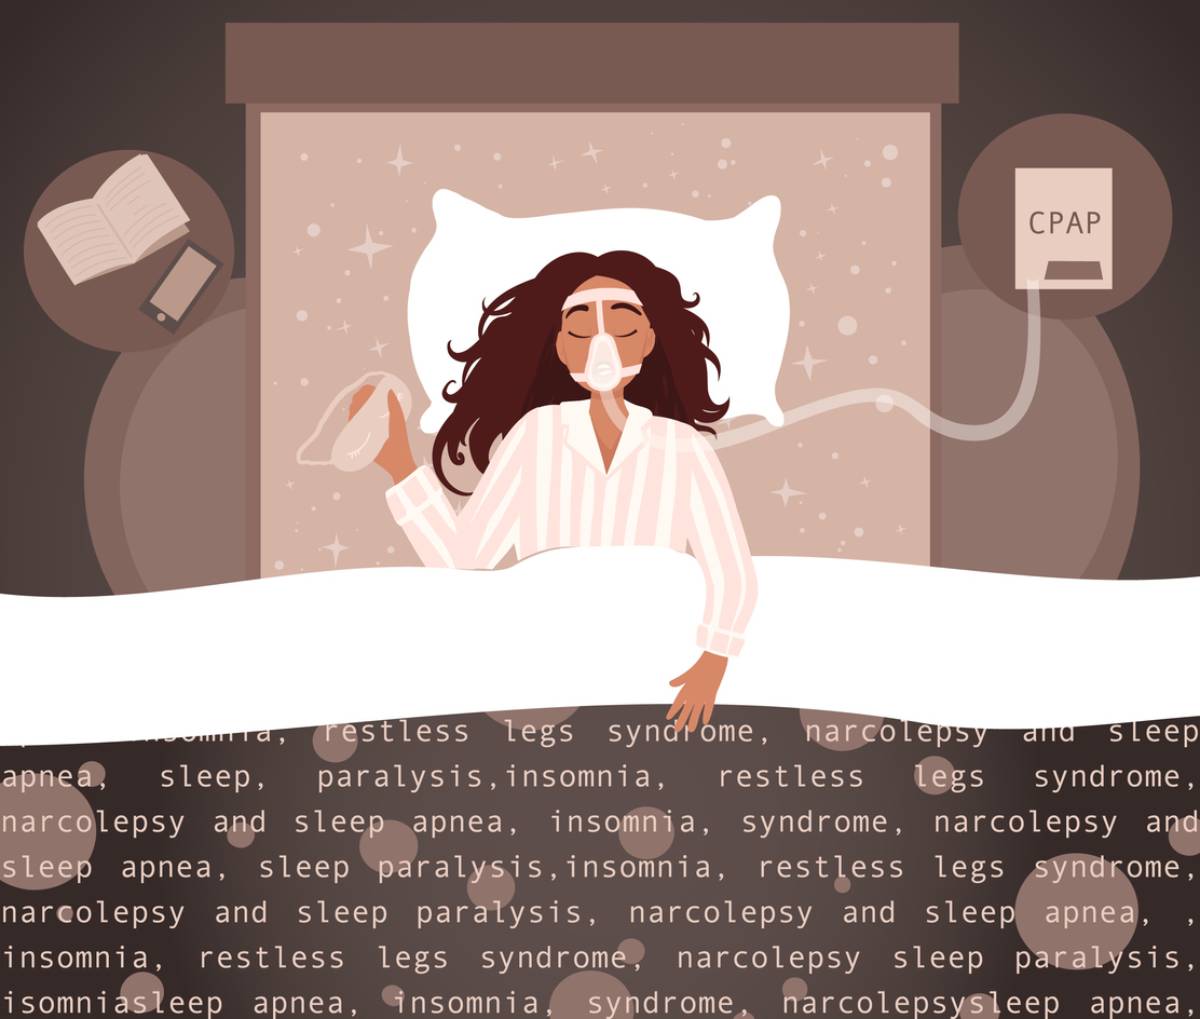 concept of sleep apnea as a common condition